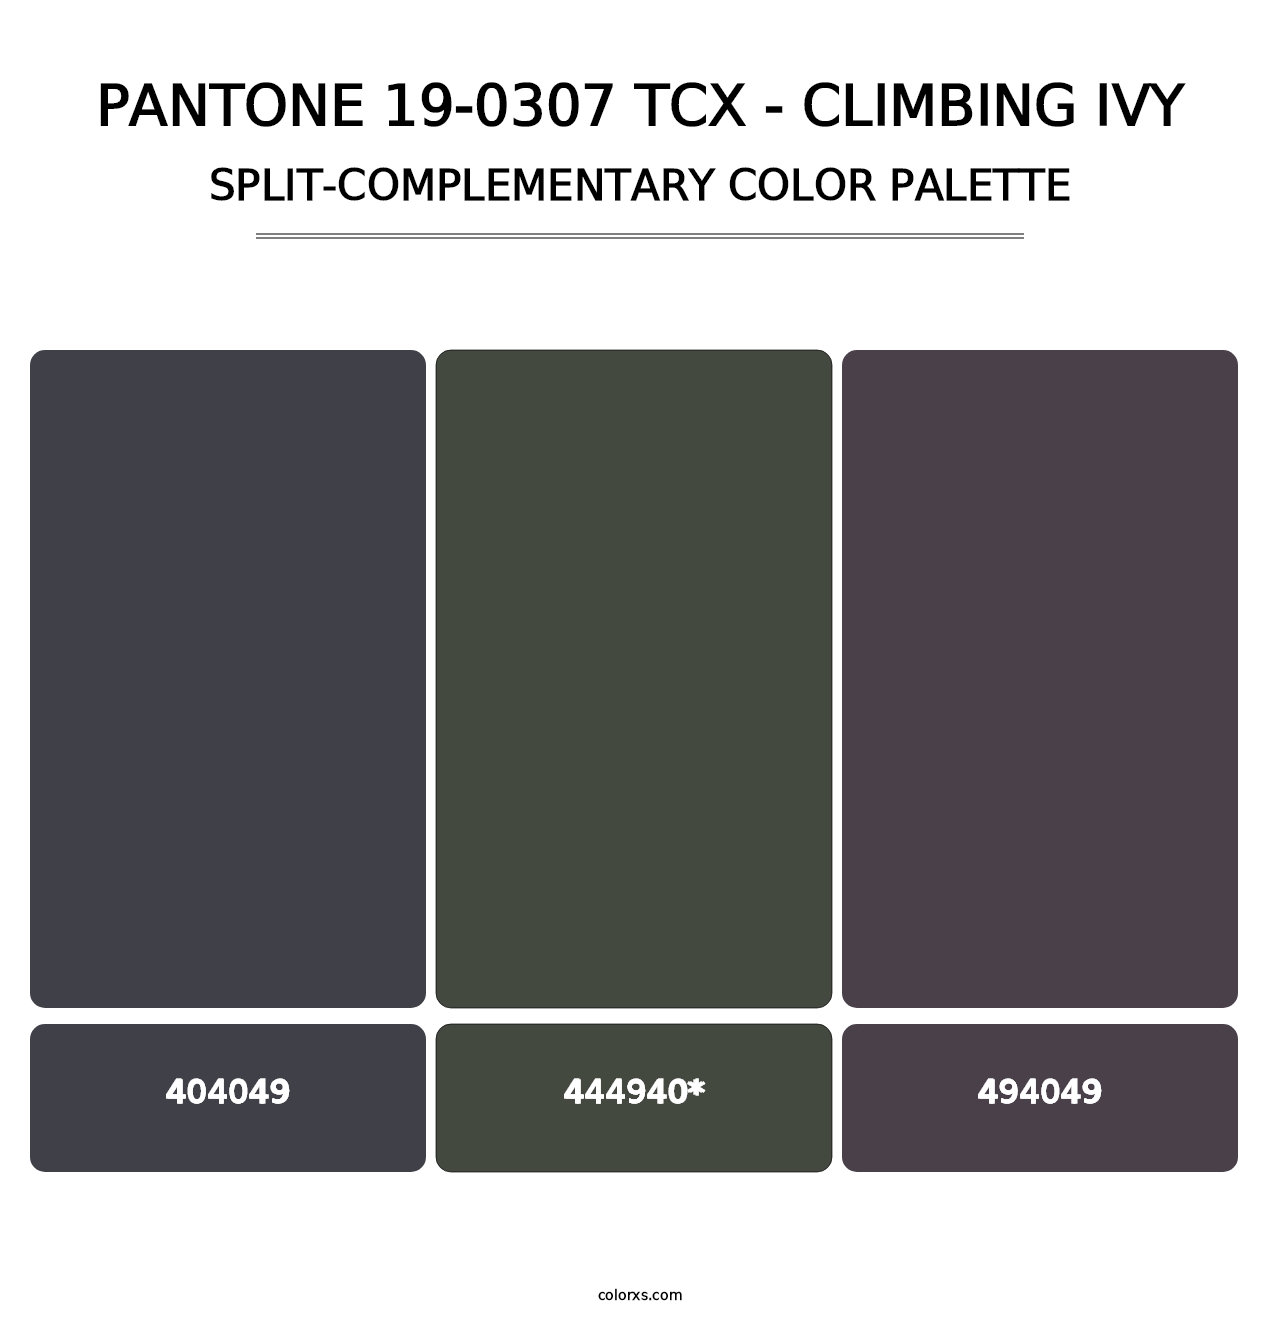 PANTONE 19-0307 TCX - Climbing Ivy - Split-Complementary Color Palette